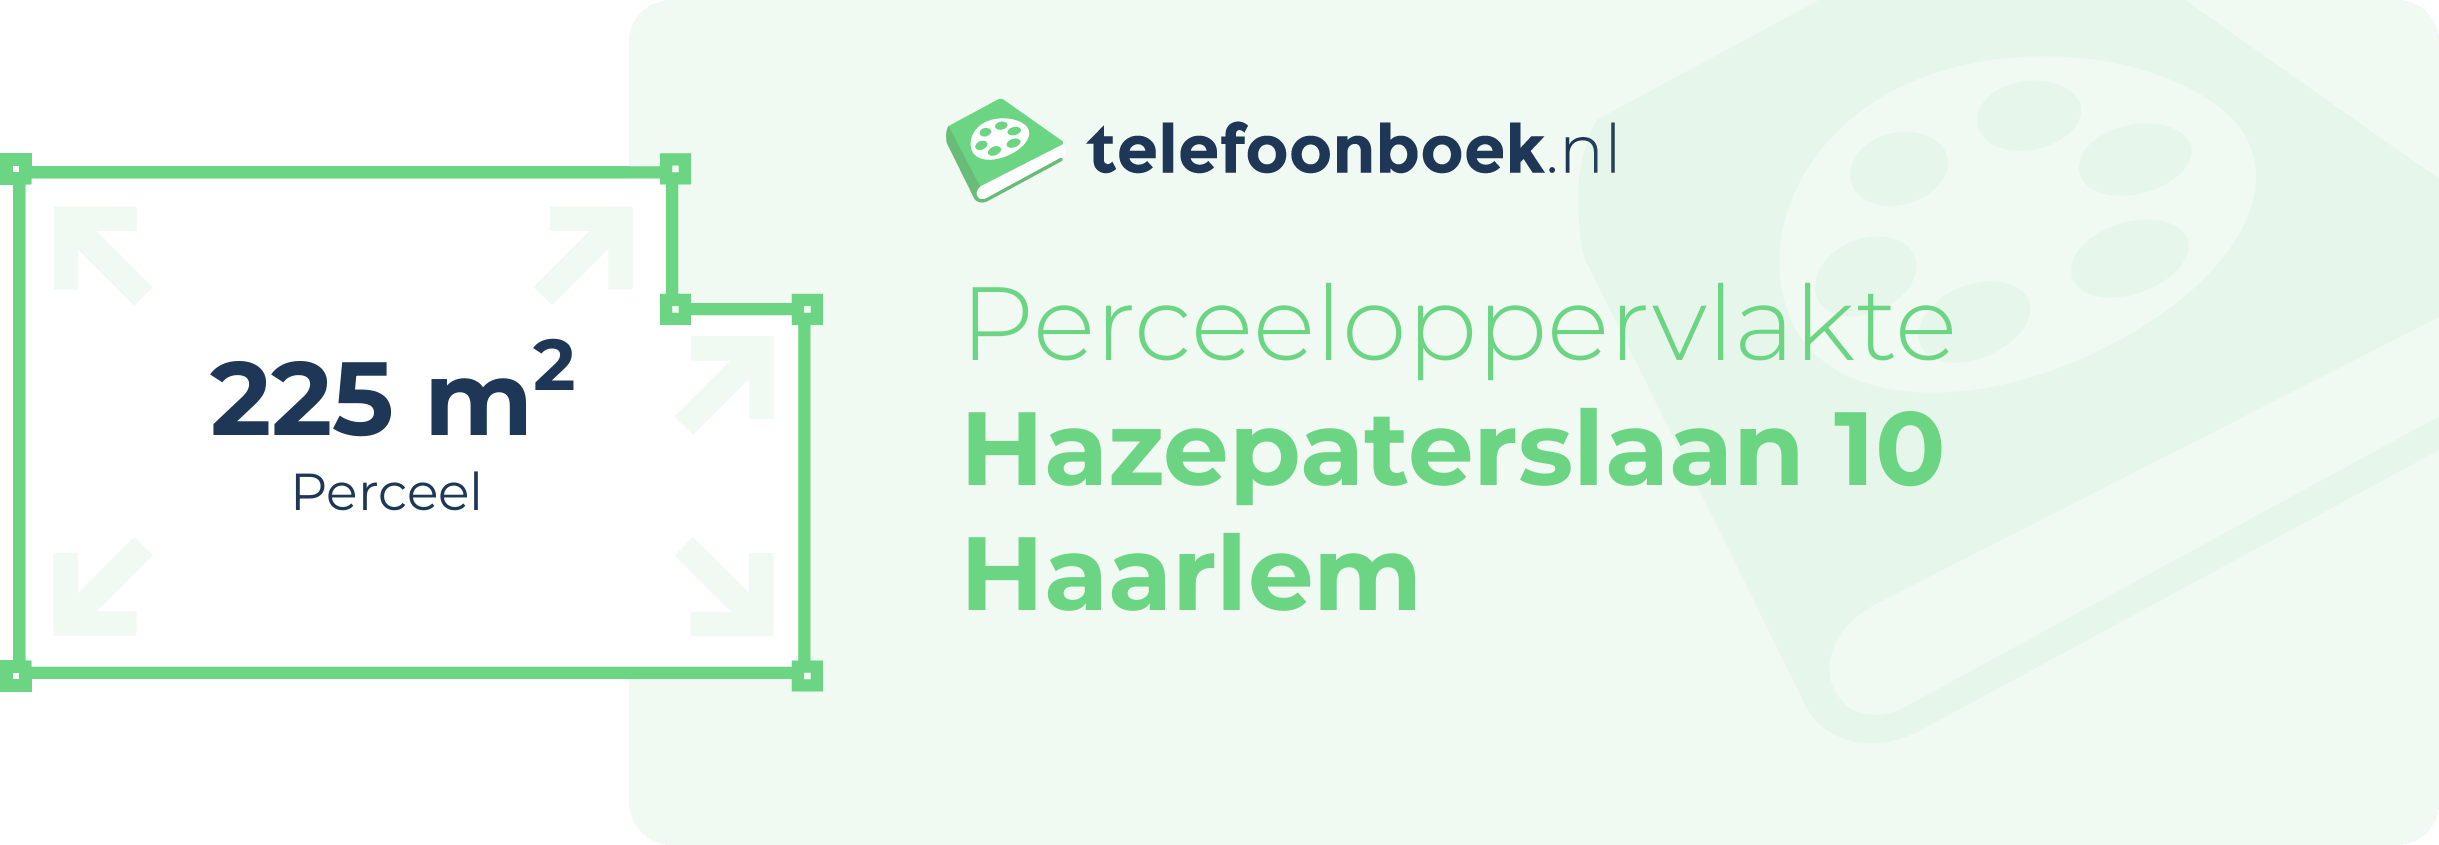 Perceeloppervlakte Hazepaterslaan 10 Haarlem